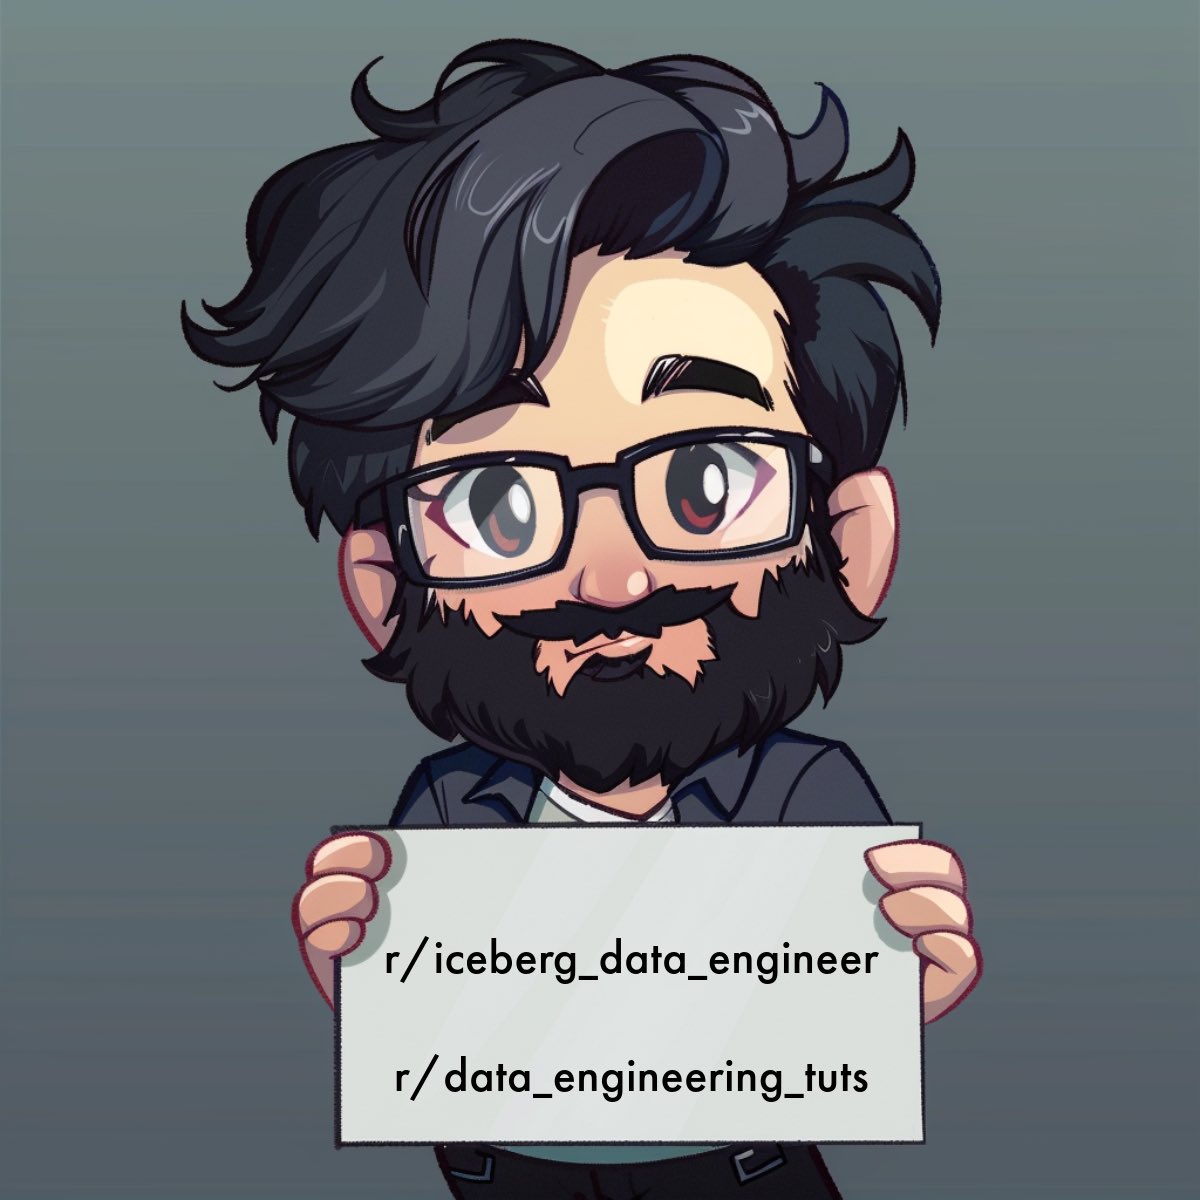 NEW DATA ENGINEERING SUBREDDITS r/iceberg_data_engineering Iceberg discussion that will include a daily discussion question. r/data_engineering_tuts For sharing data engineering blogs and tutorials #DataEngineering #BigData #DataLakehouse